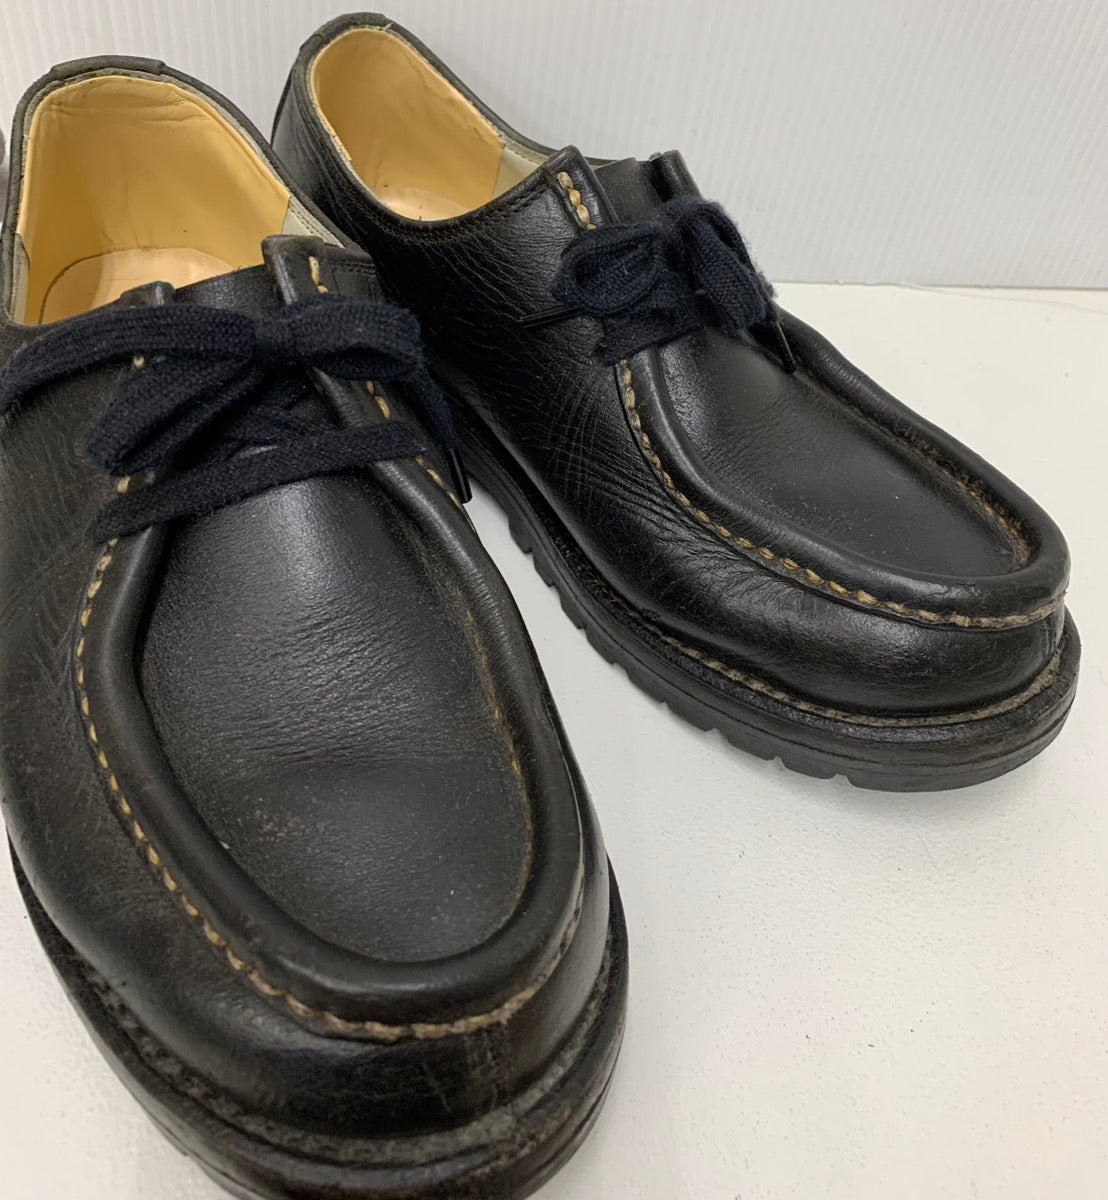 ゴロー goro チロリアンシューズ vibramソール メンズ靴 ブーツ ワーク ロゴ ブラック 201-shoes599